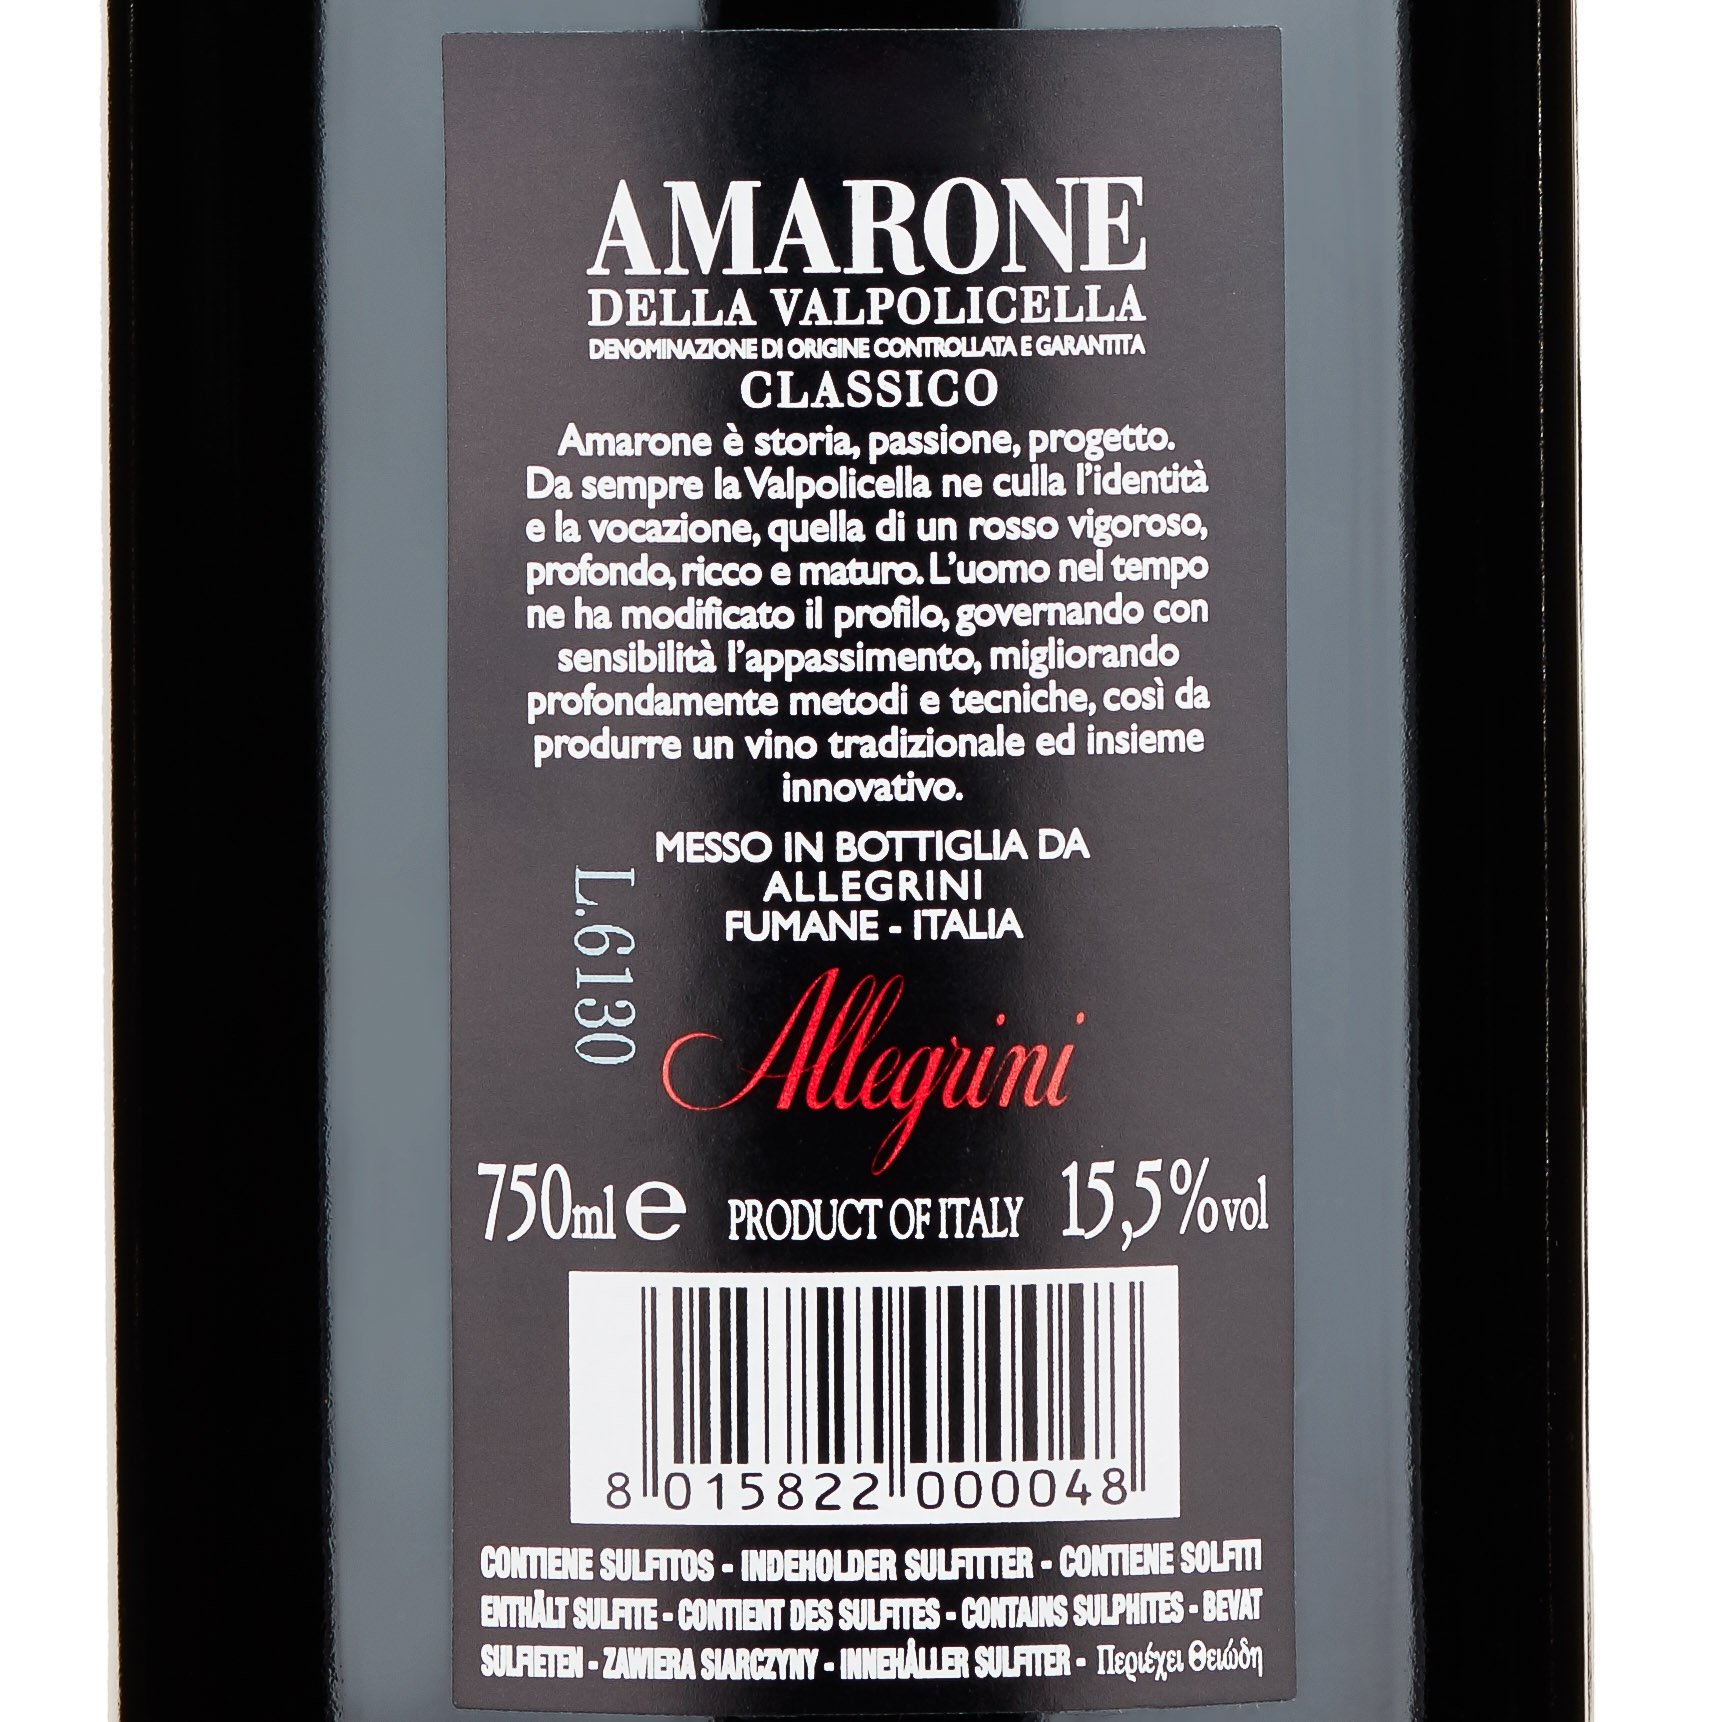 Амароне делла вальполичелла классико. Аллигрини производитель вина. Амароне делла Вальполичелла Аллегрини 2016 из рук. Презентация вина Амароне. Amarone della Valpolicella Classico 2013 цена.